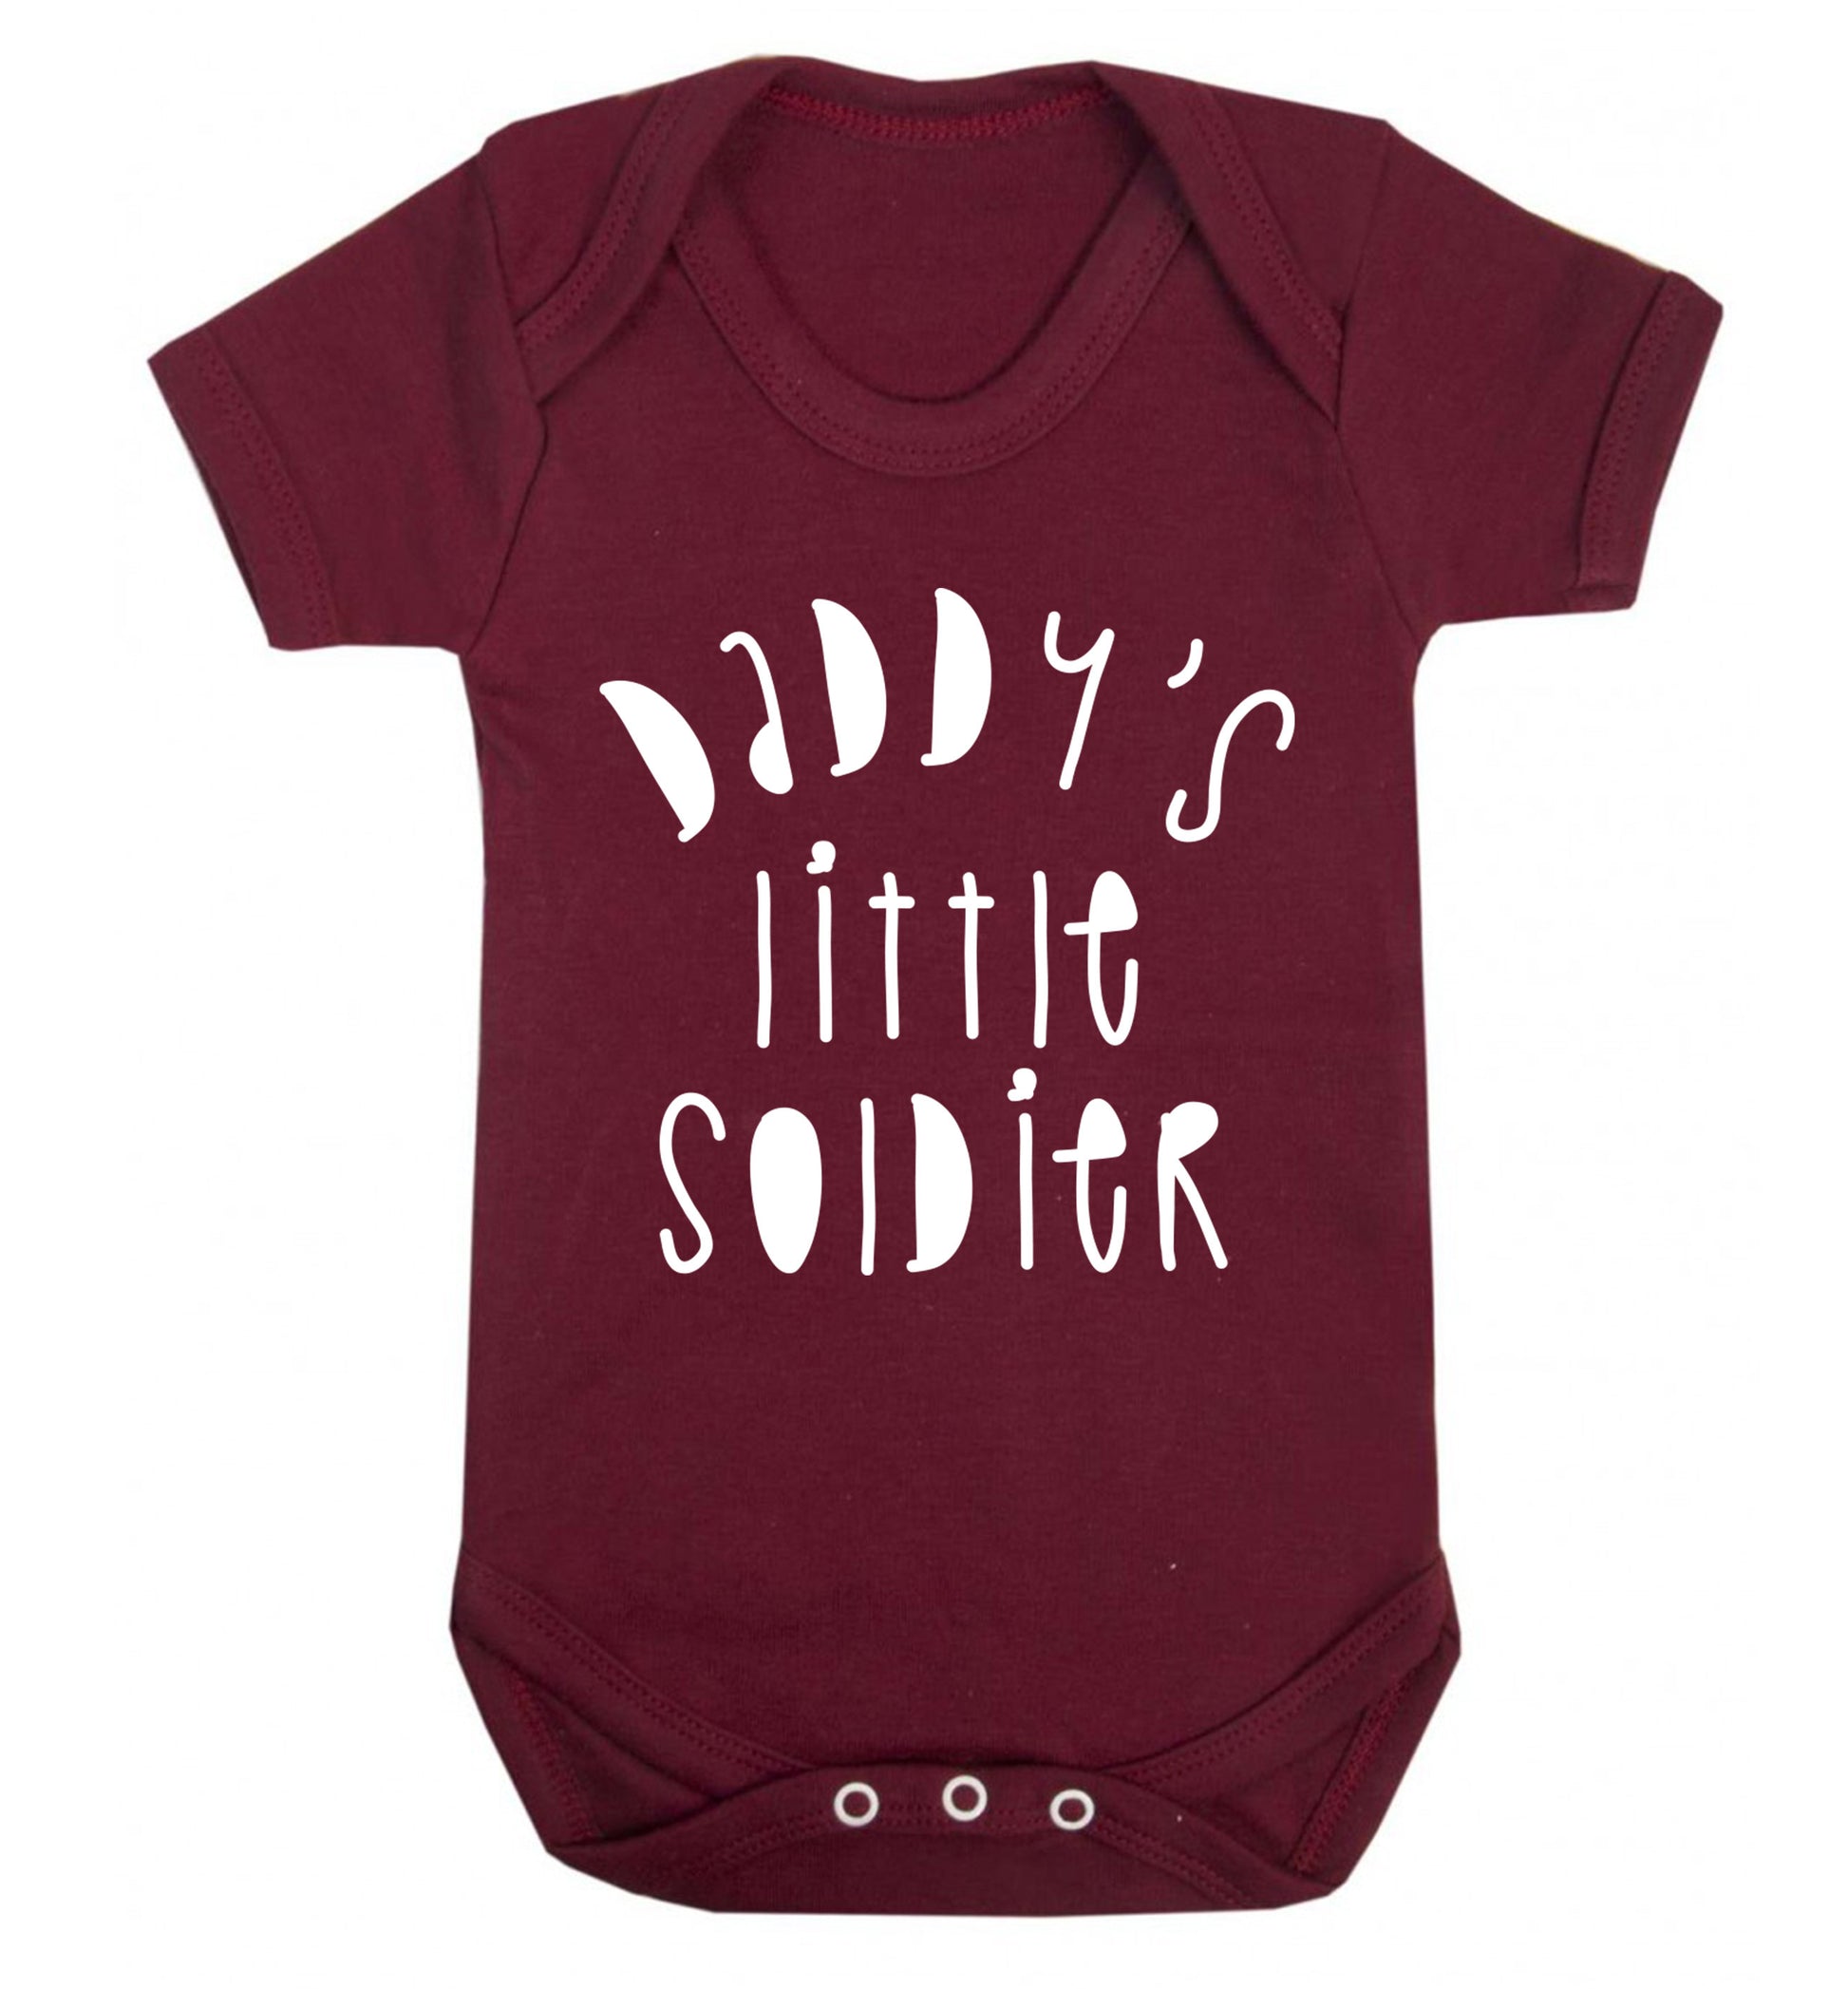 Daddy's little soldier Baby Vest maroon 18-24 months